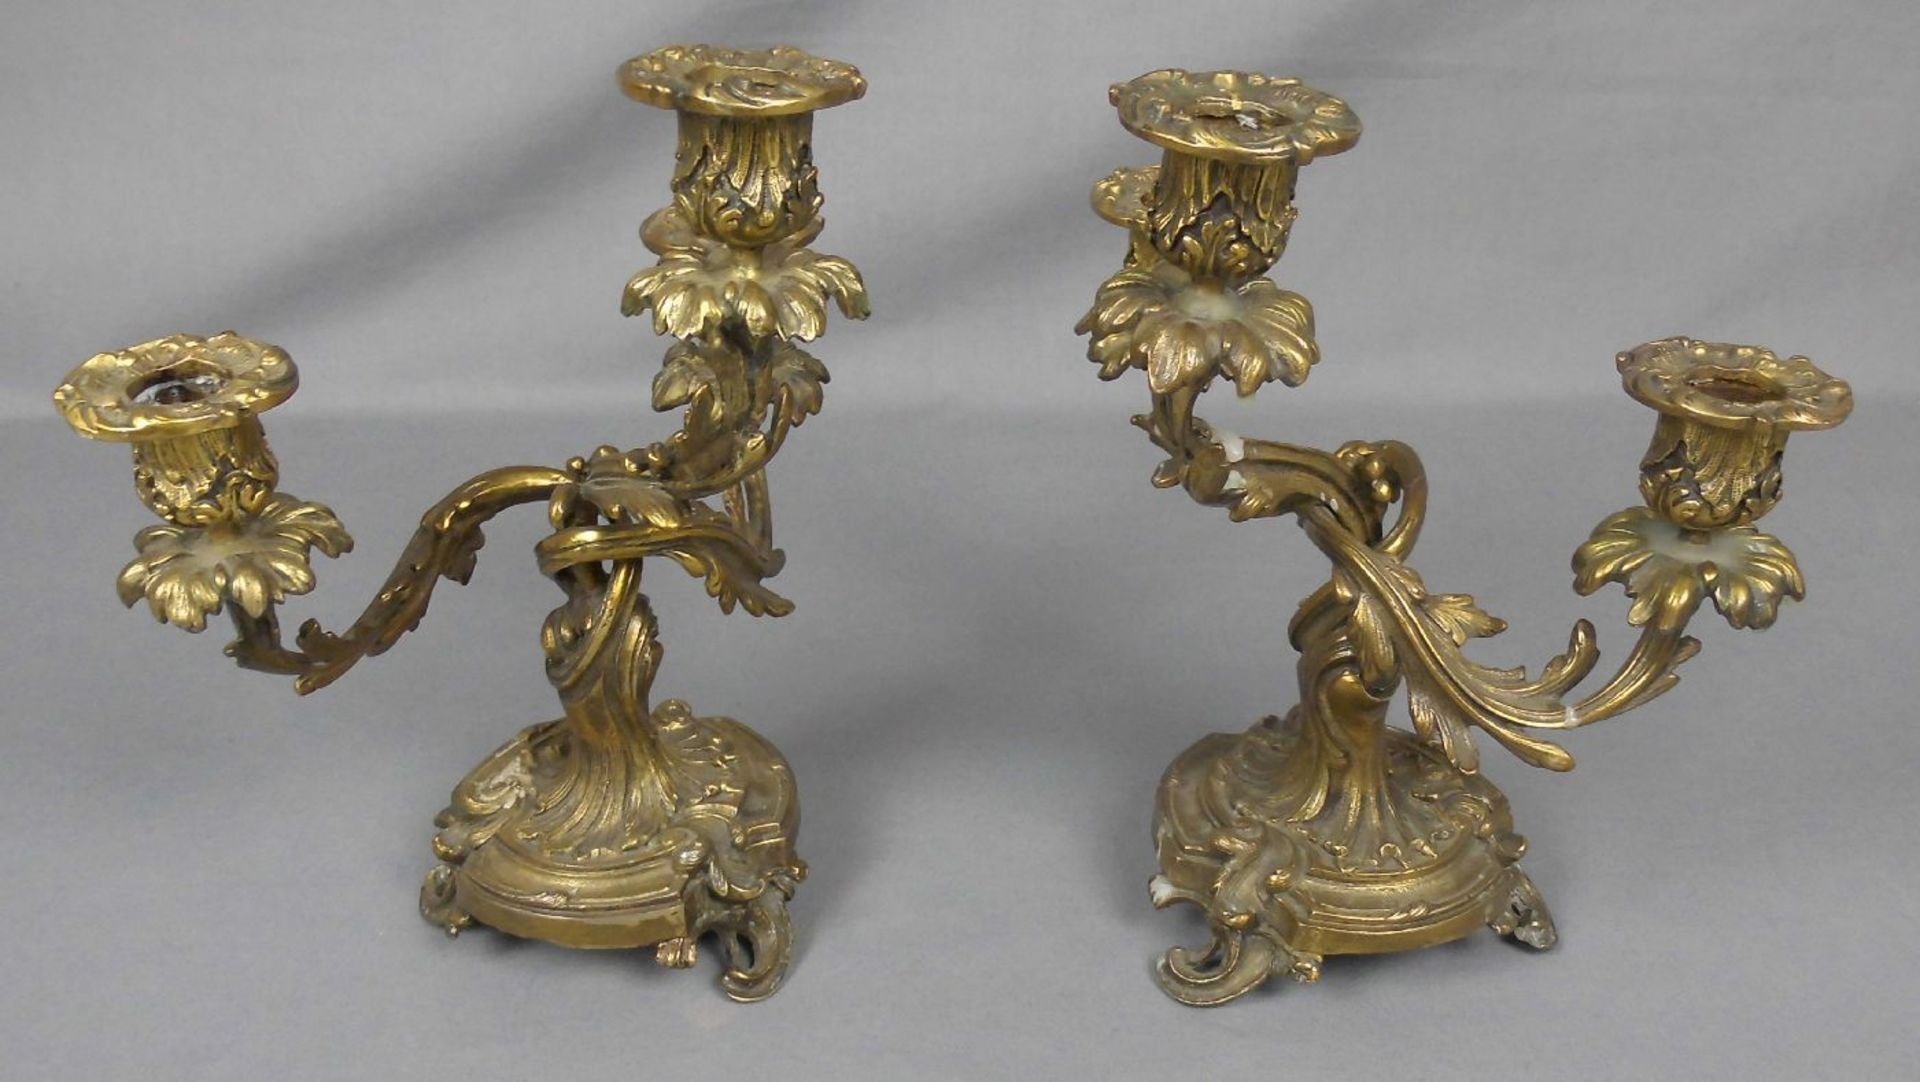 PAAR LEUCHTER / TISCHLEUCHTER / candlestands, Bronze, gemarkt mit Krone und Monogramm, gearbeitet in